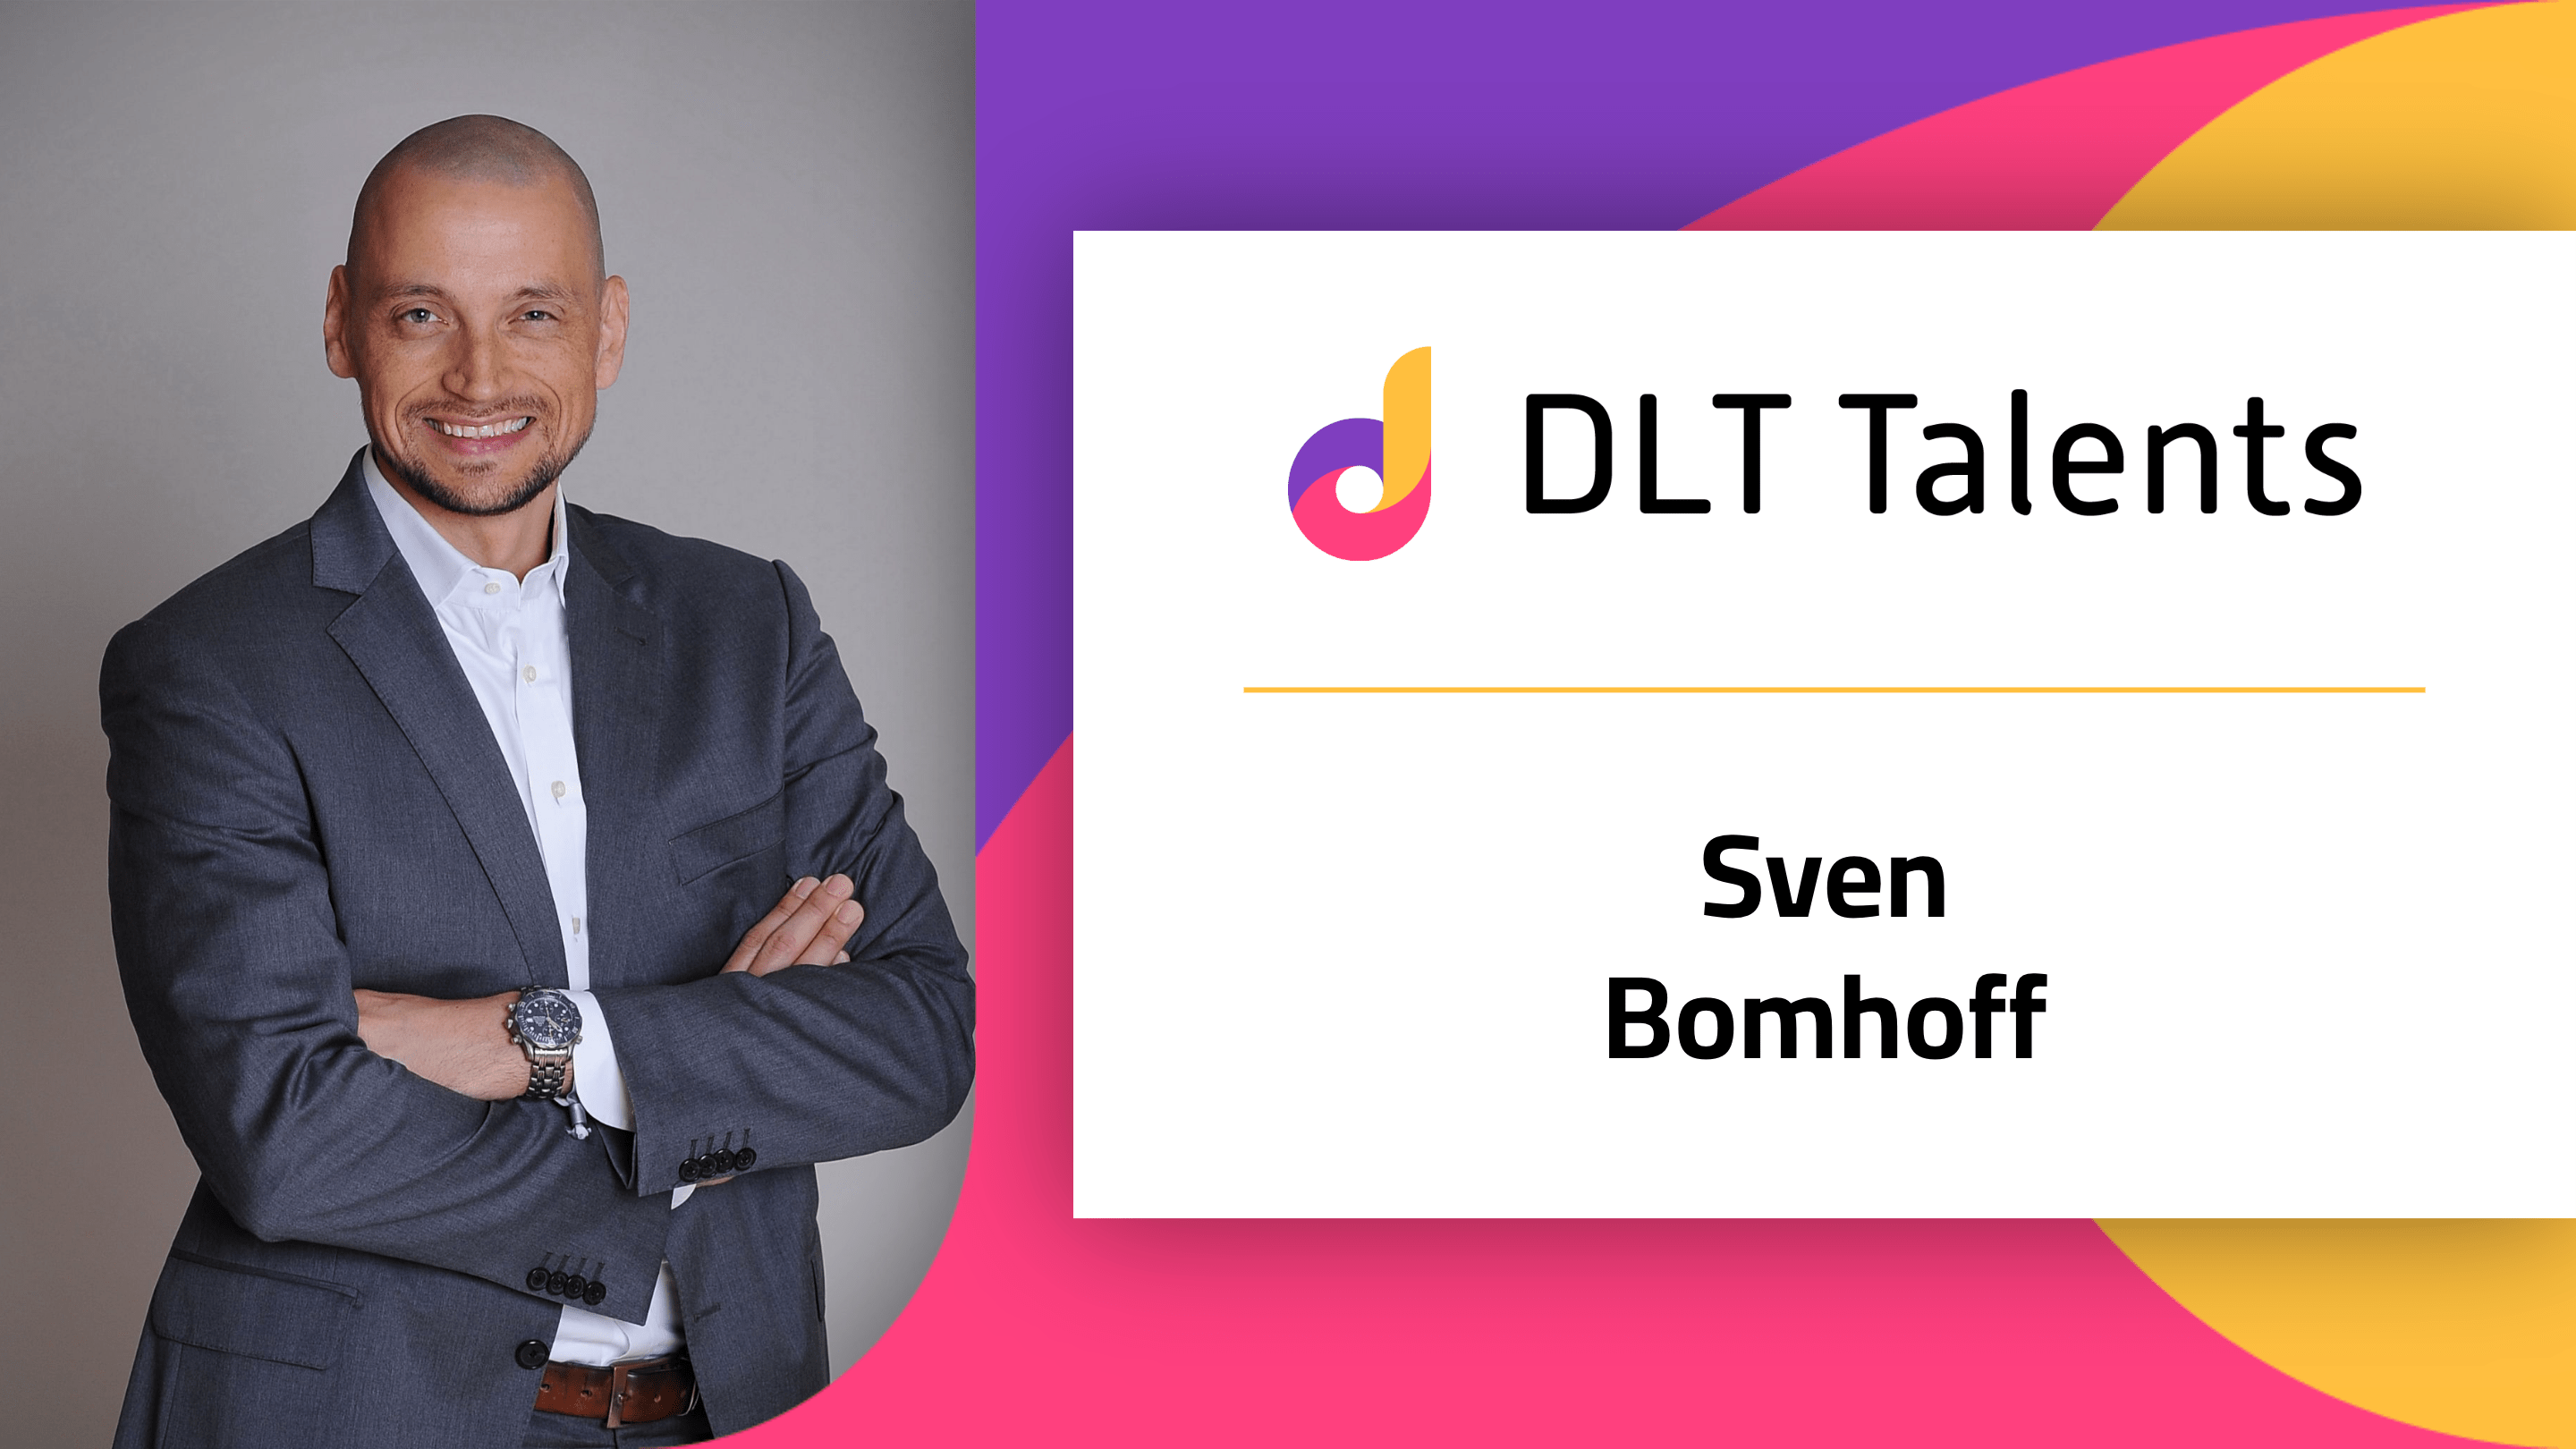 DLT Talents Mentor – Sven Bomhoff